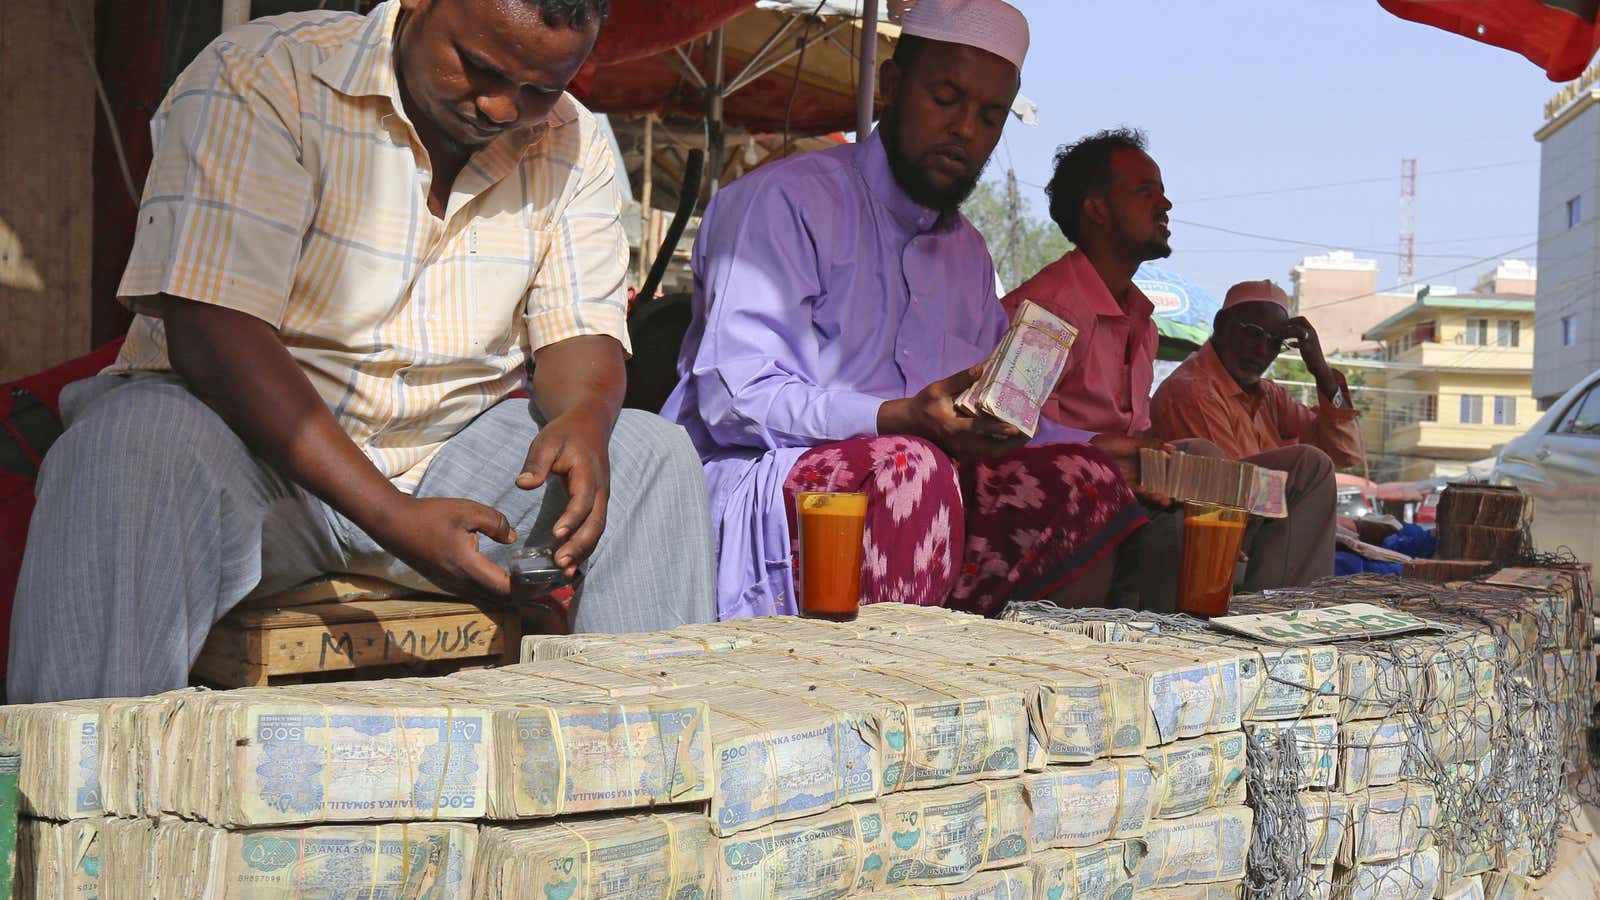 The US dollar was retailing at 559 Somali shillings as at Feb. 2